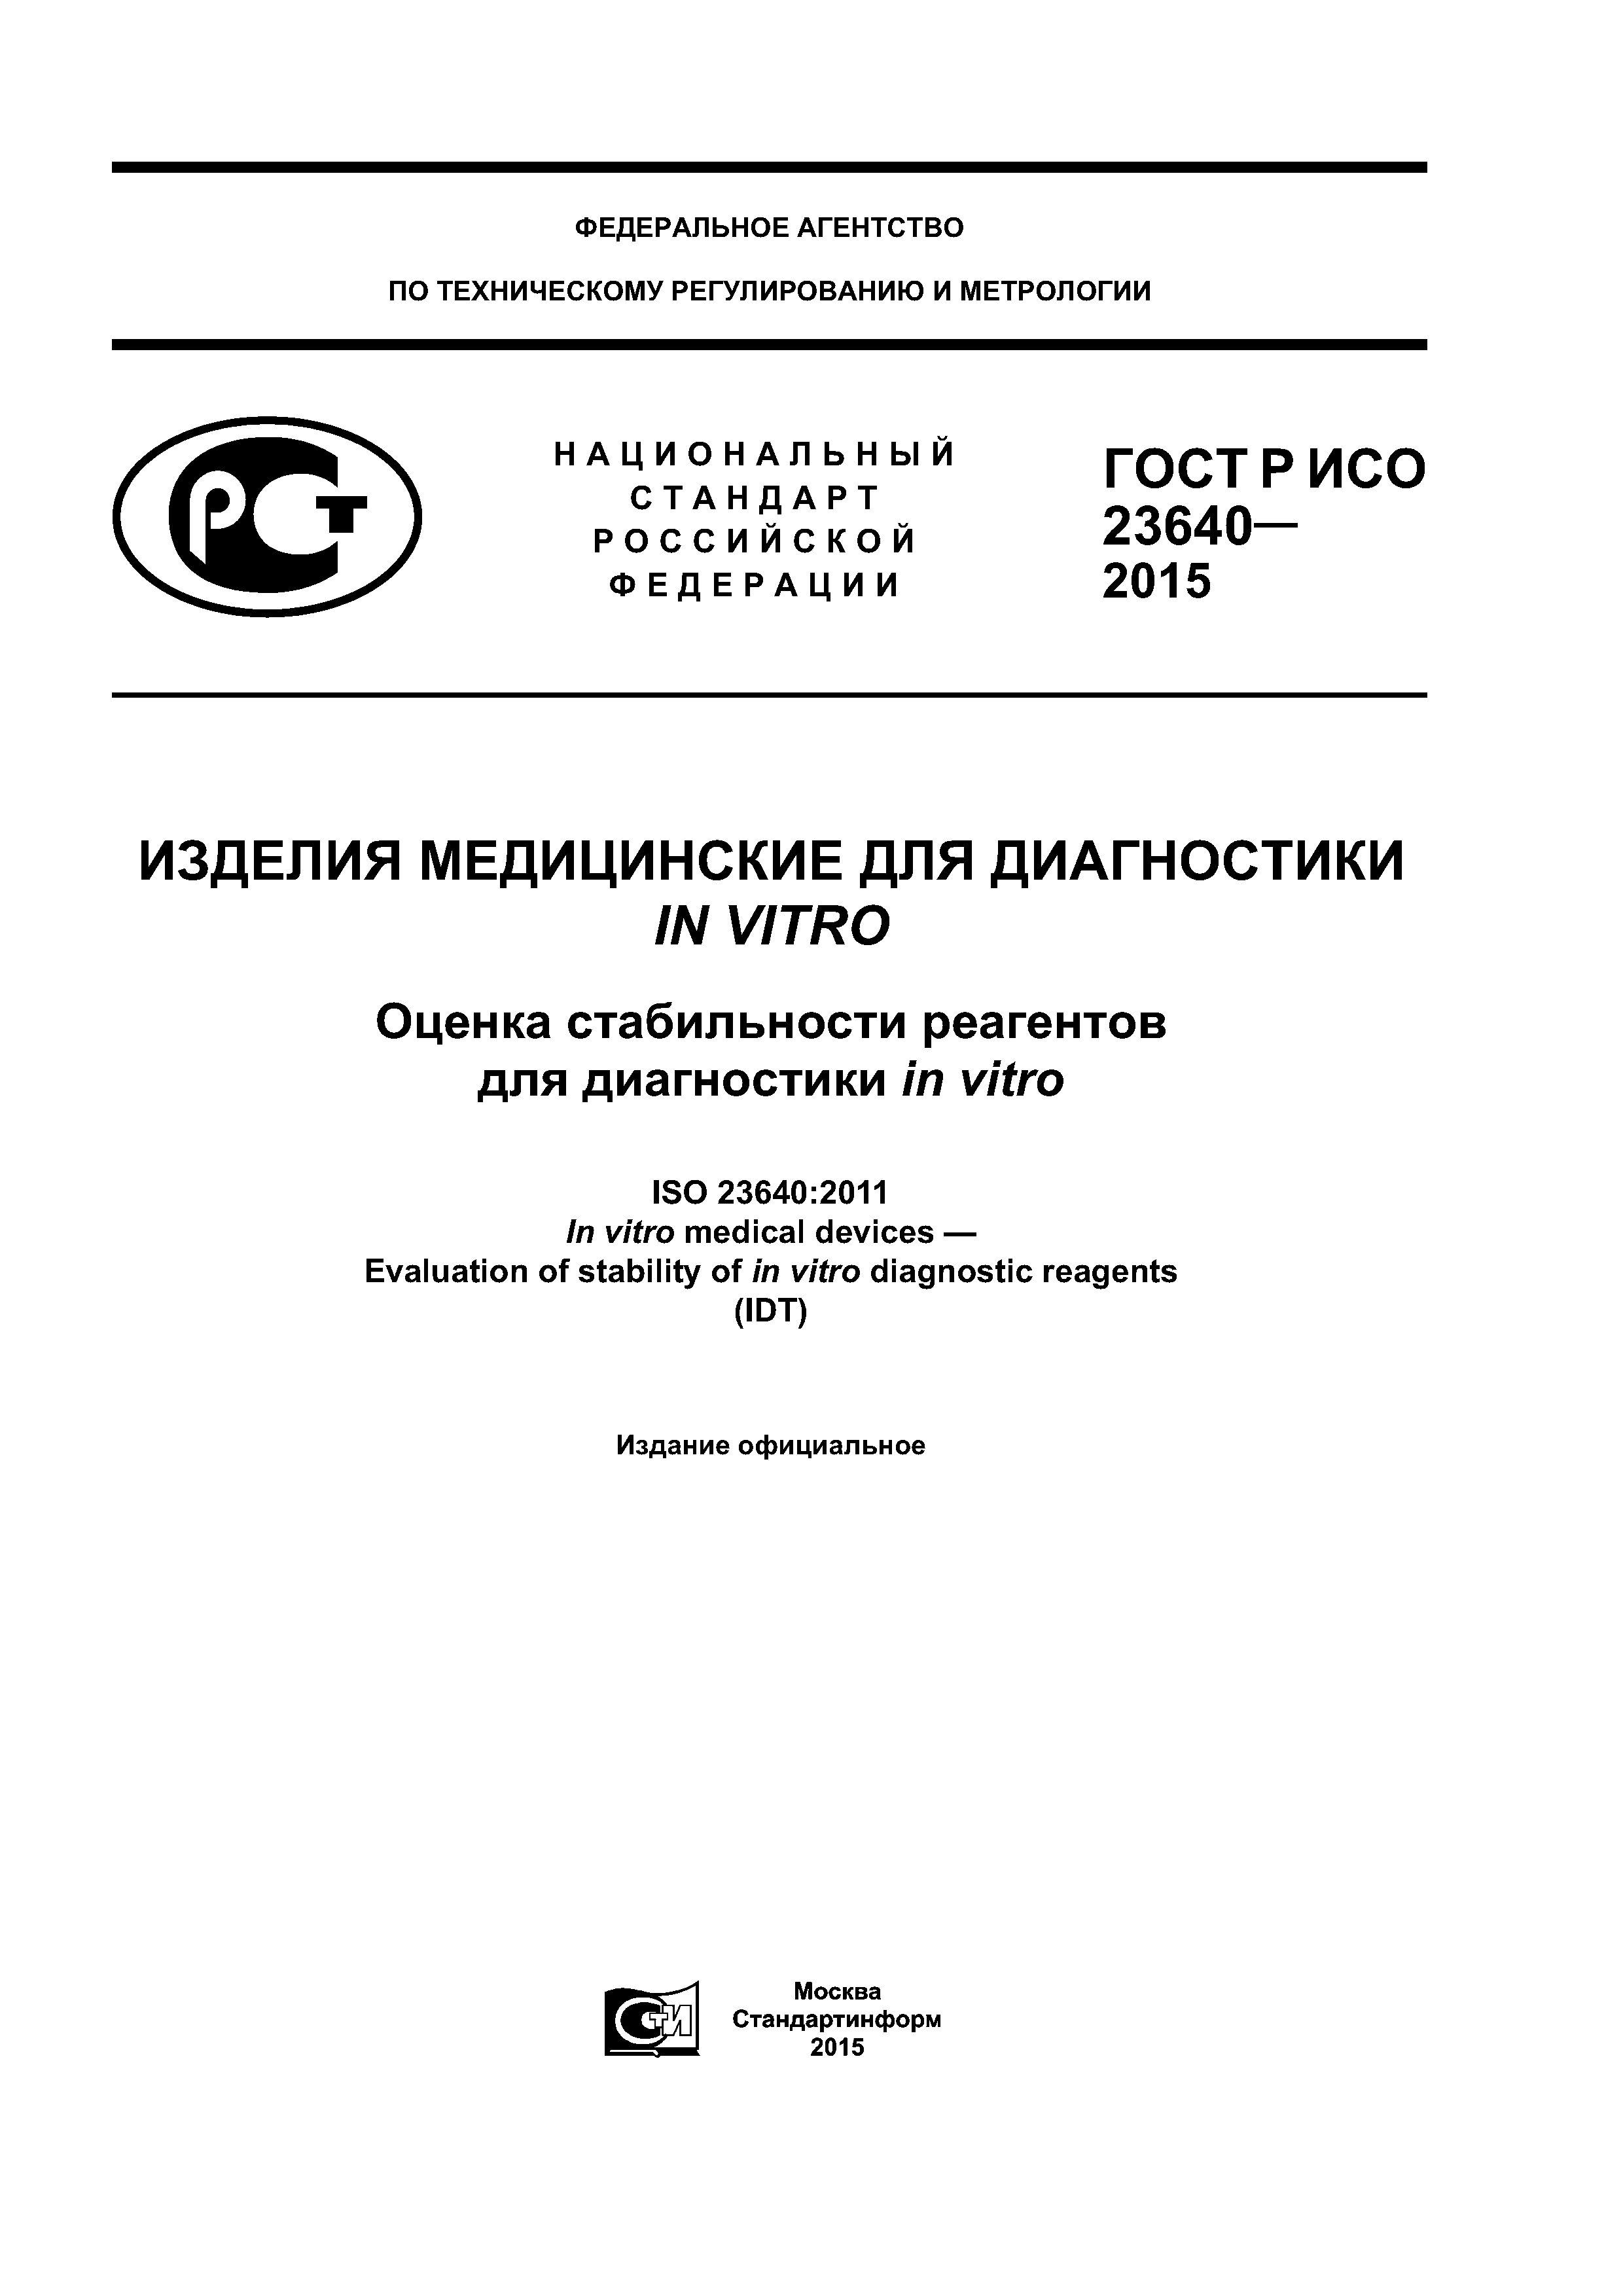 ГОСТ Р ИСО 23640-2015